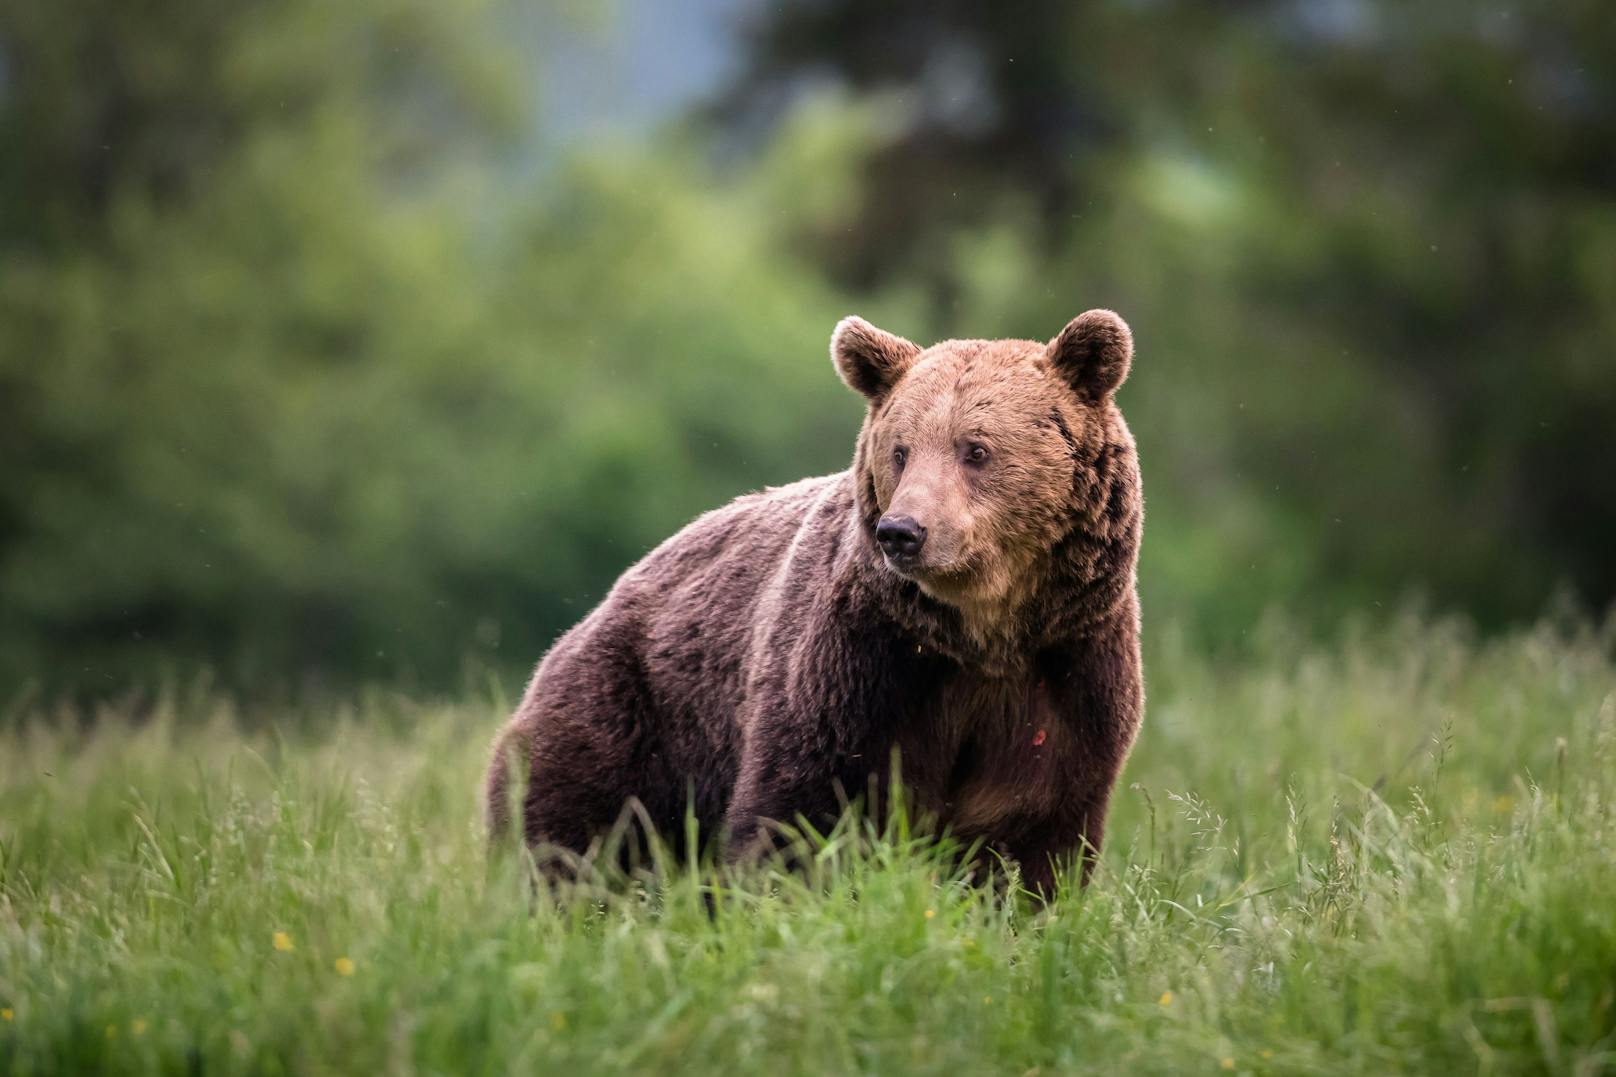 Bär-Angriff in Italien – jetzt soll er getötet werden